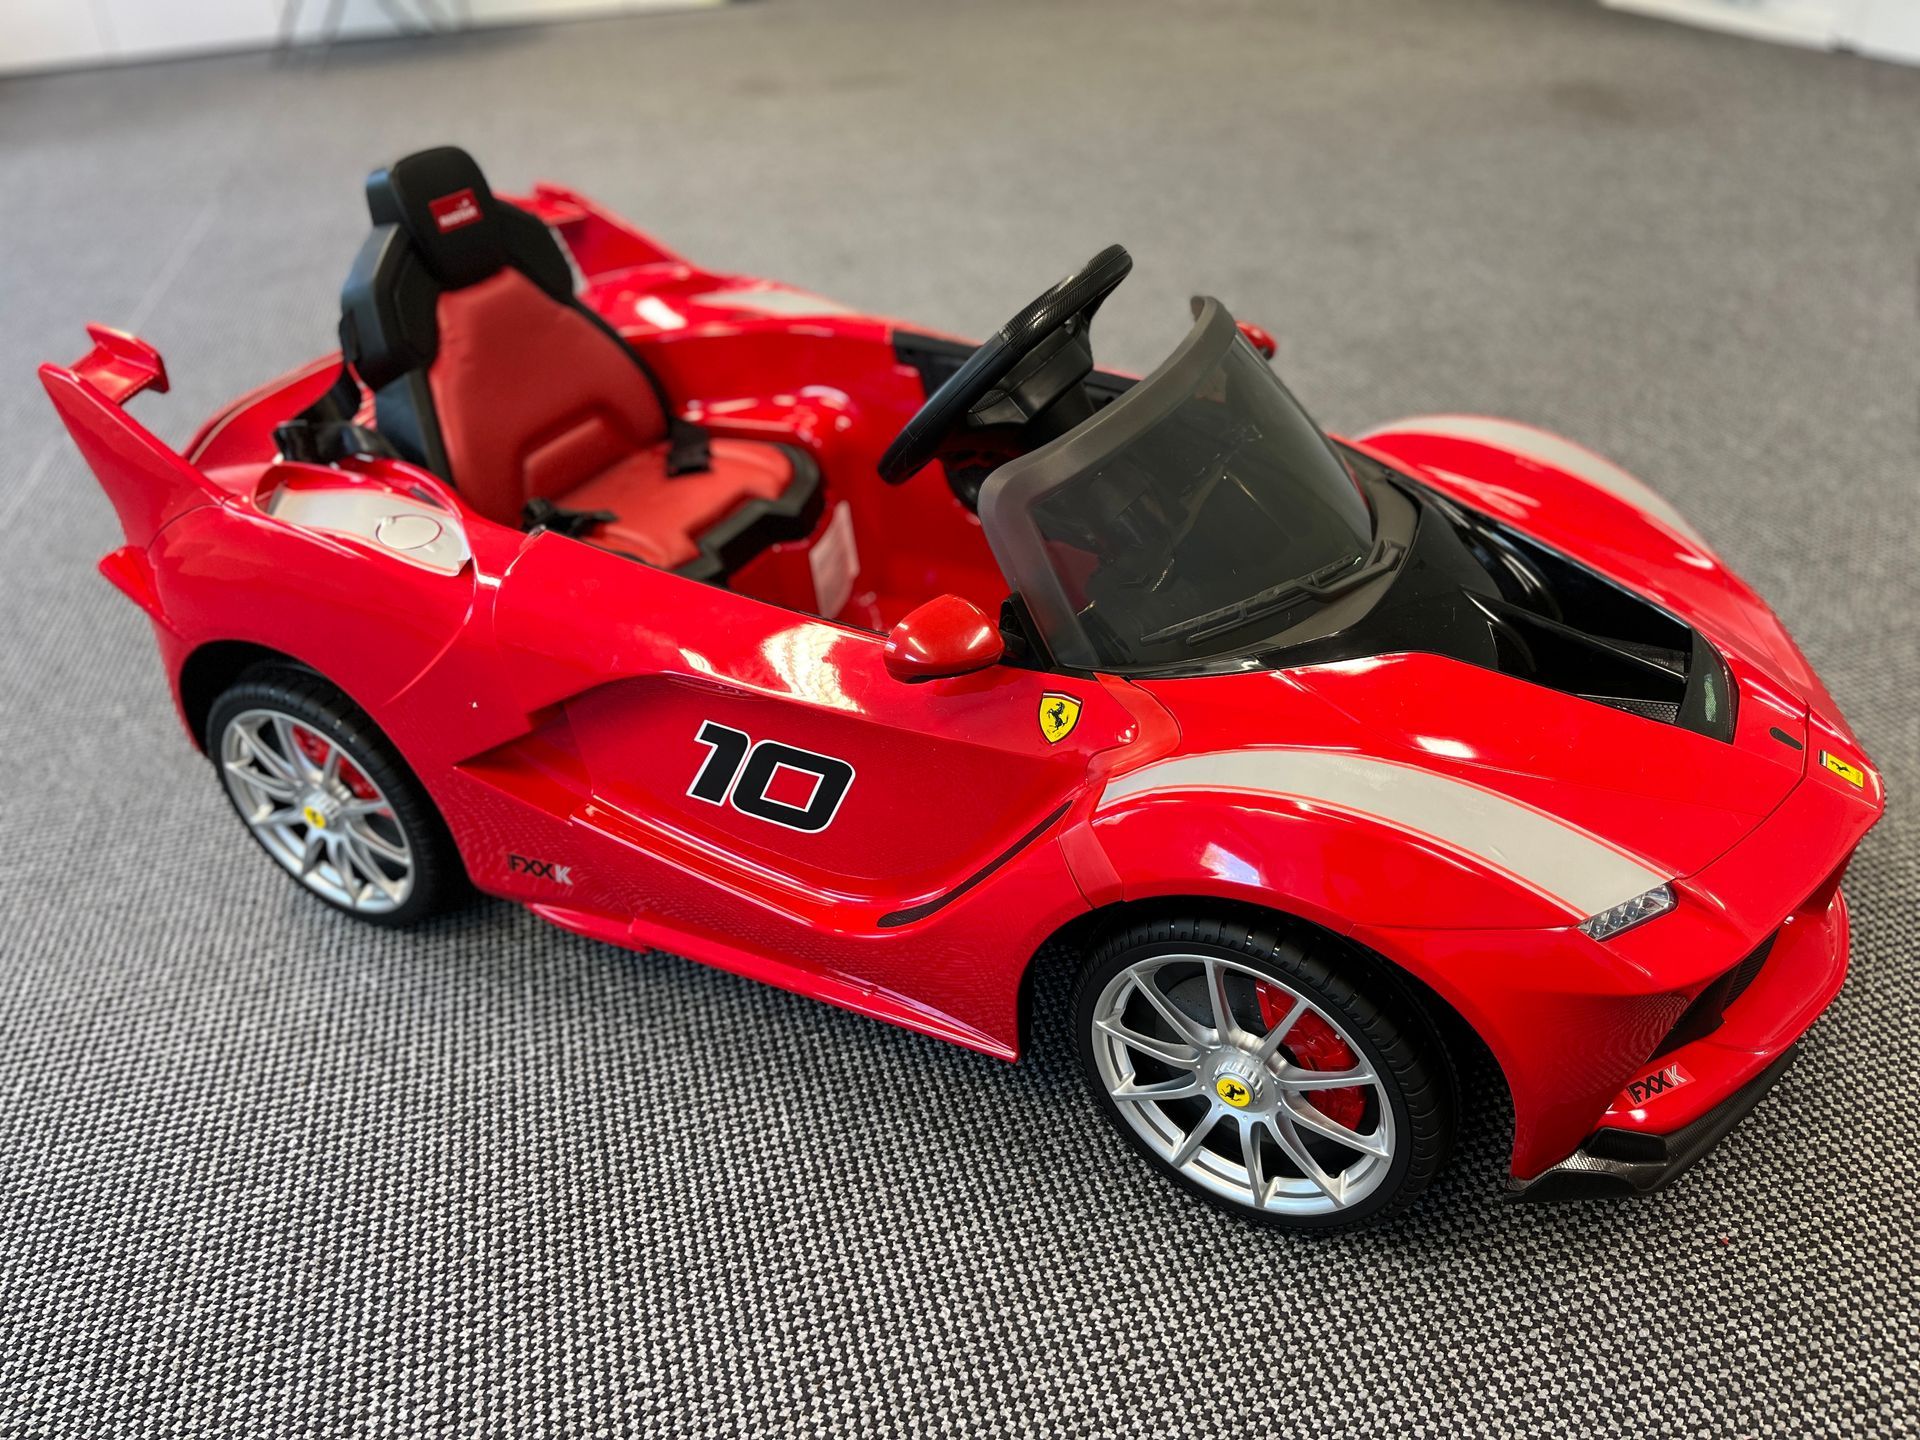 Electric ride-in toy Ferrari